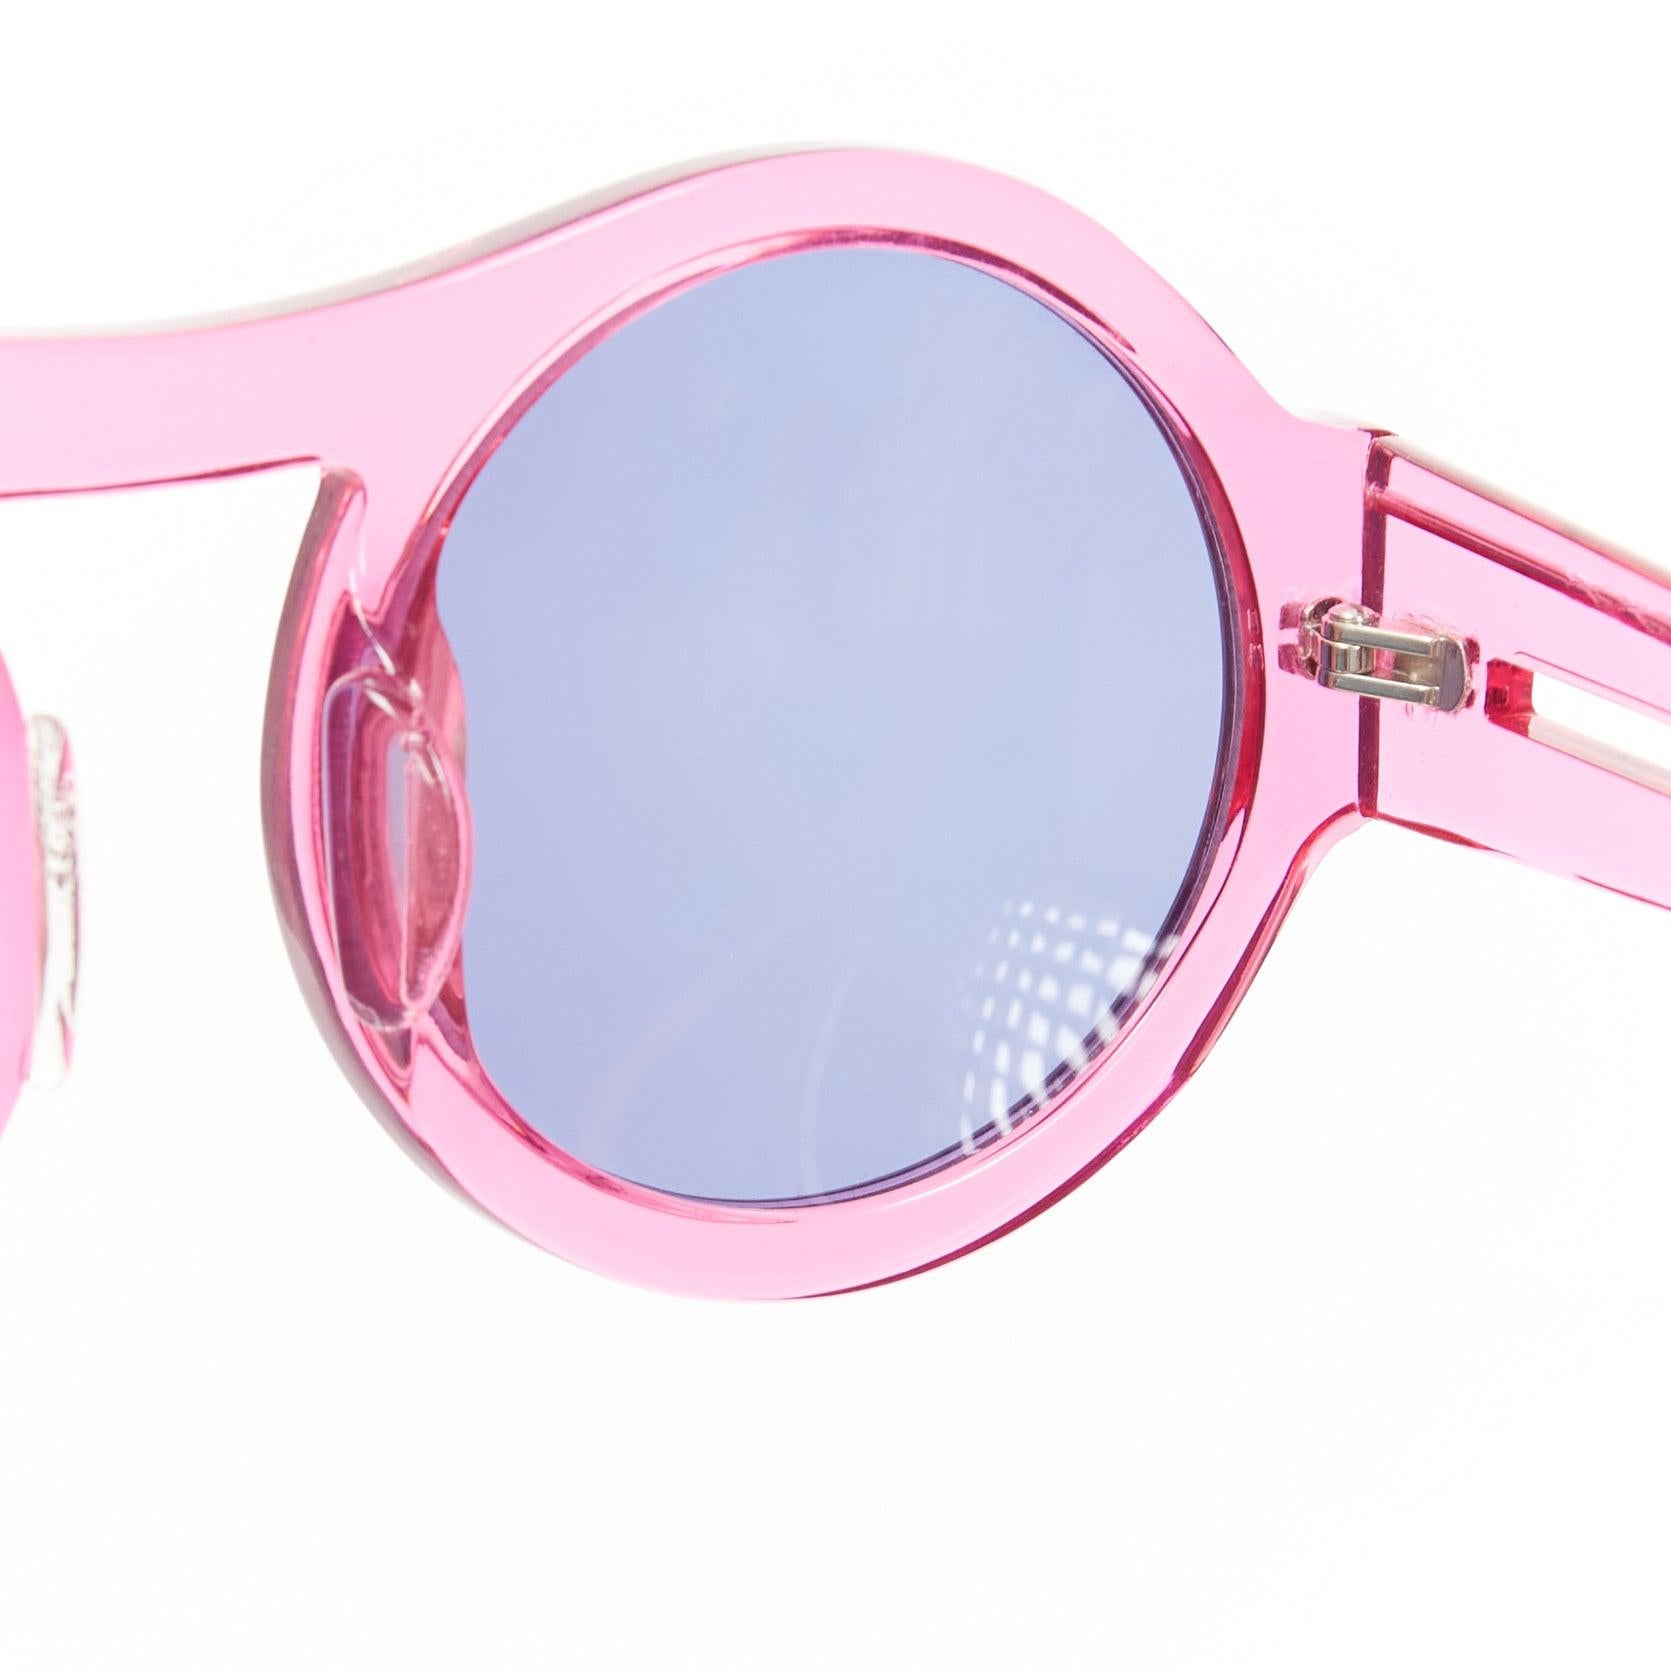 KAREN WALKER Bunny 1101405 clear pink round frame dark blue lens sunglasses For Sale 3